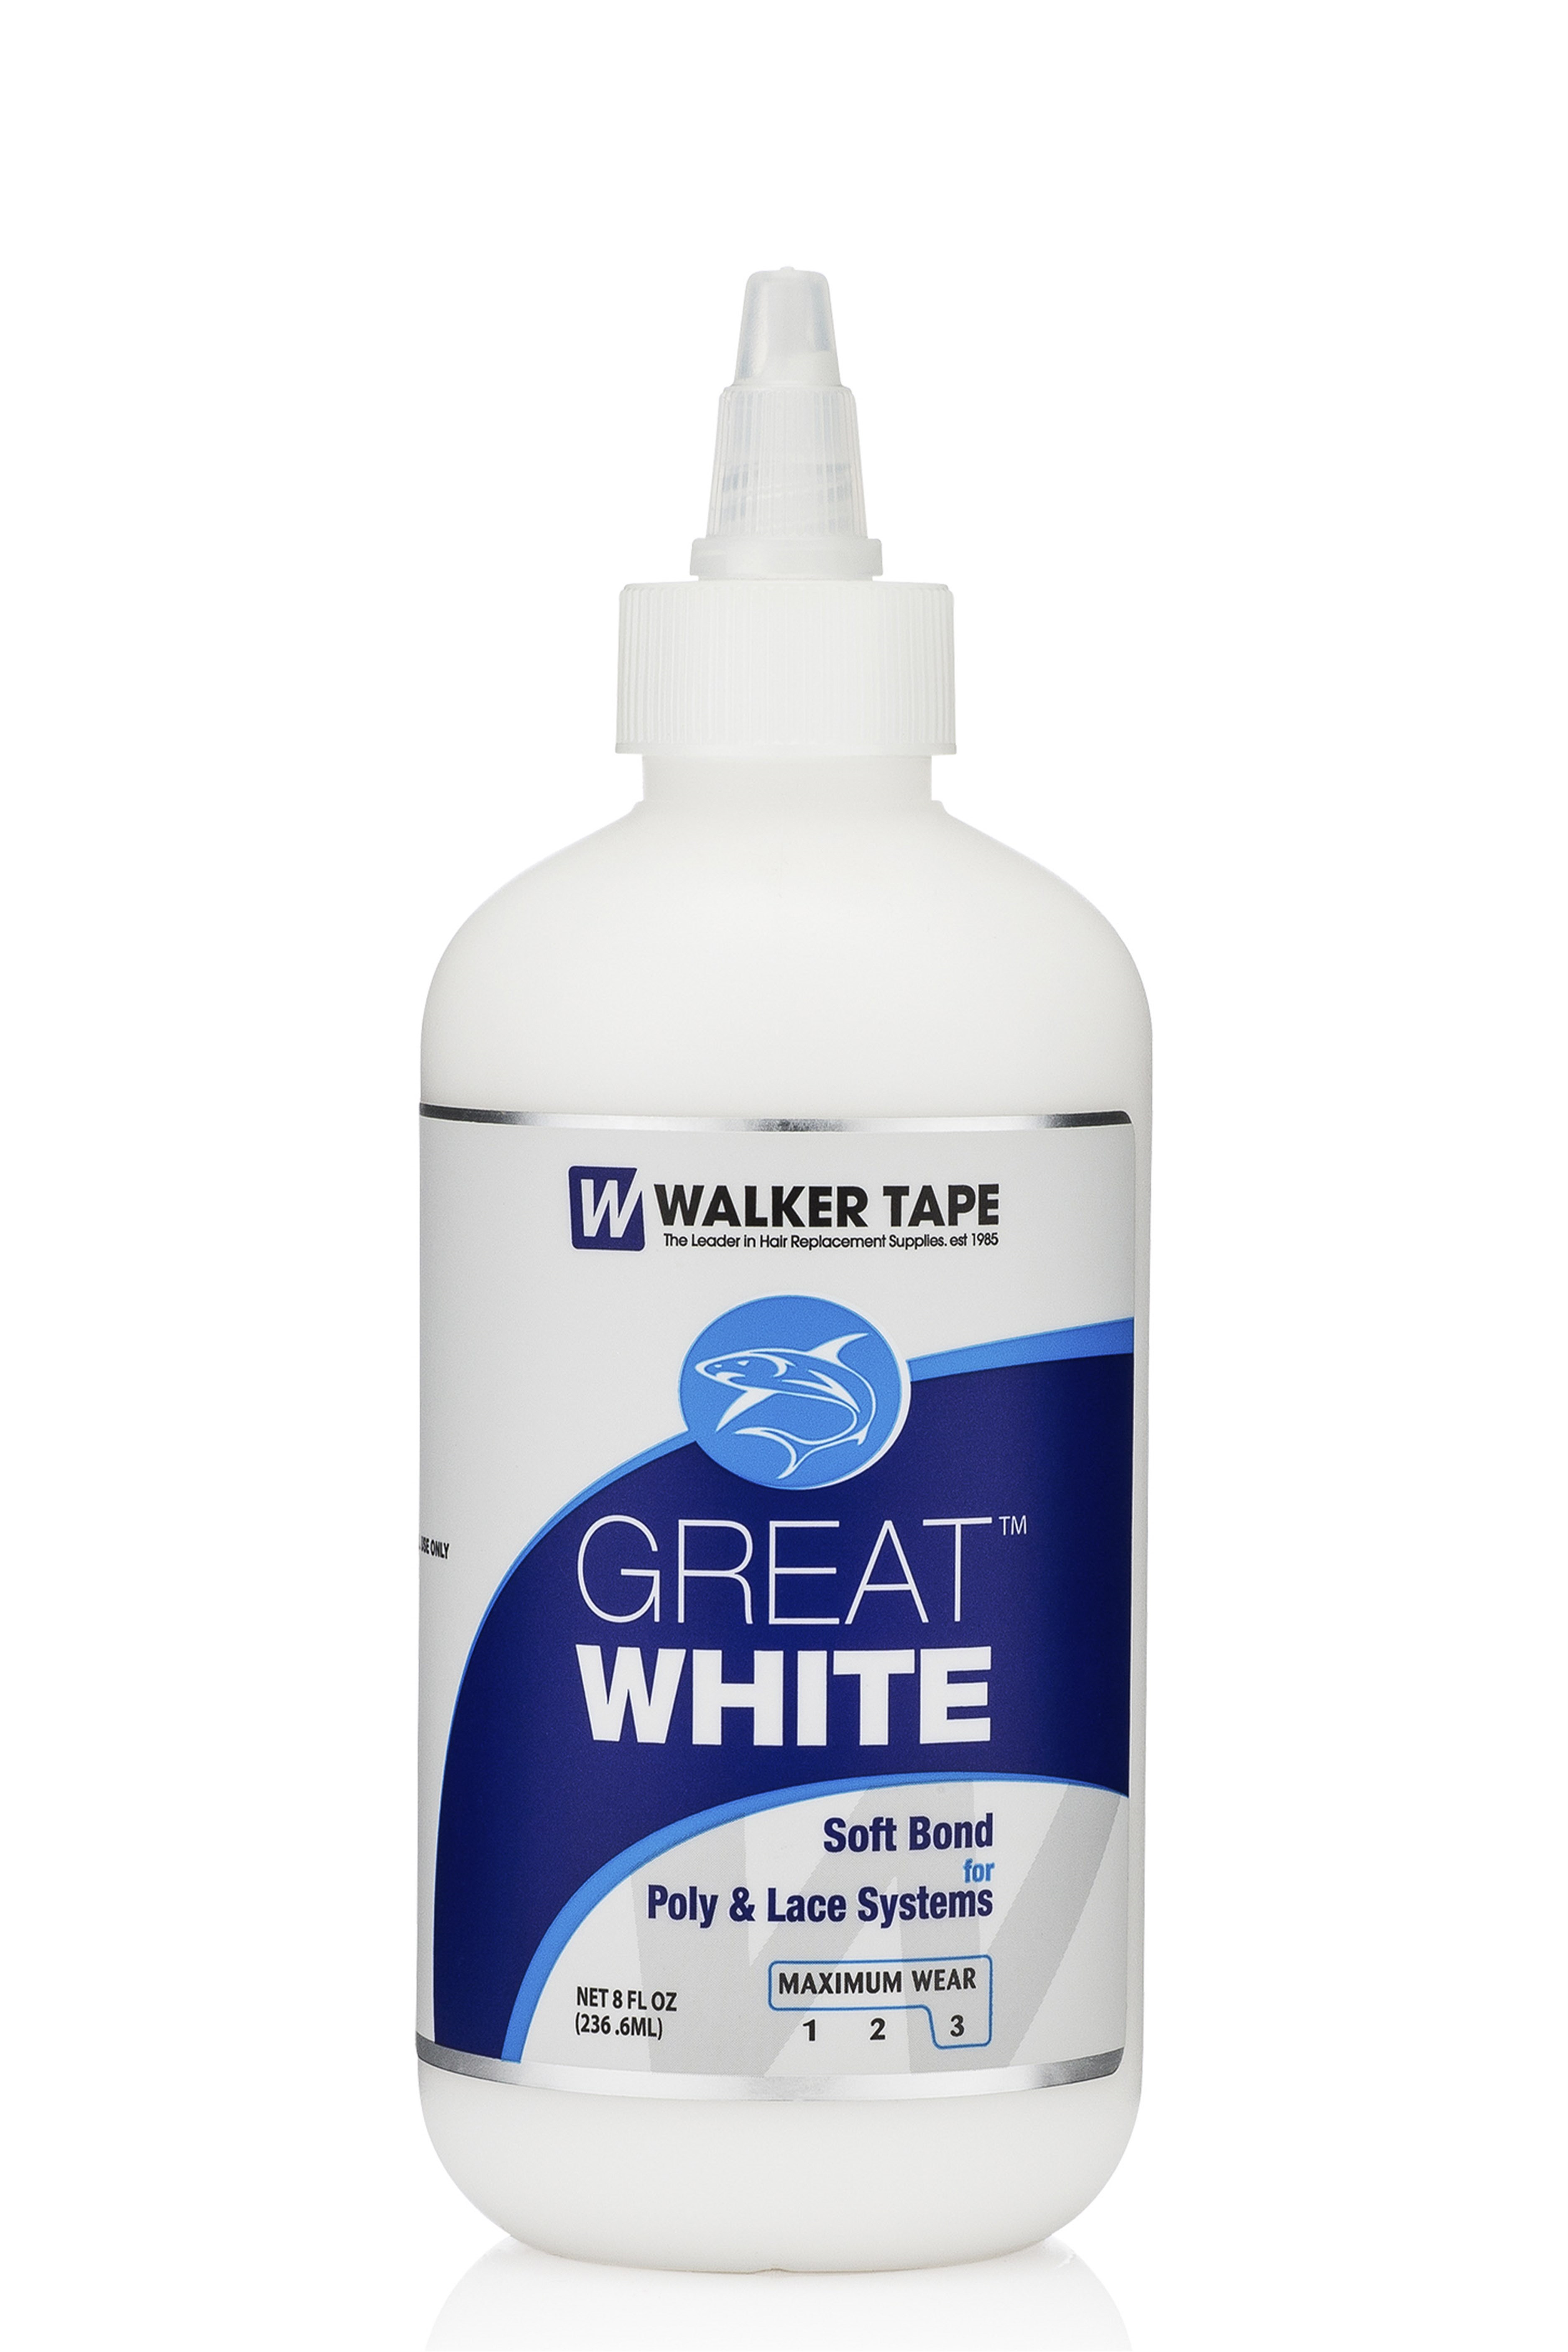 Walker Tape Great White Protez Saç Yapıştırıcısı 8 FL OZ (236.6ML)  856459002566